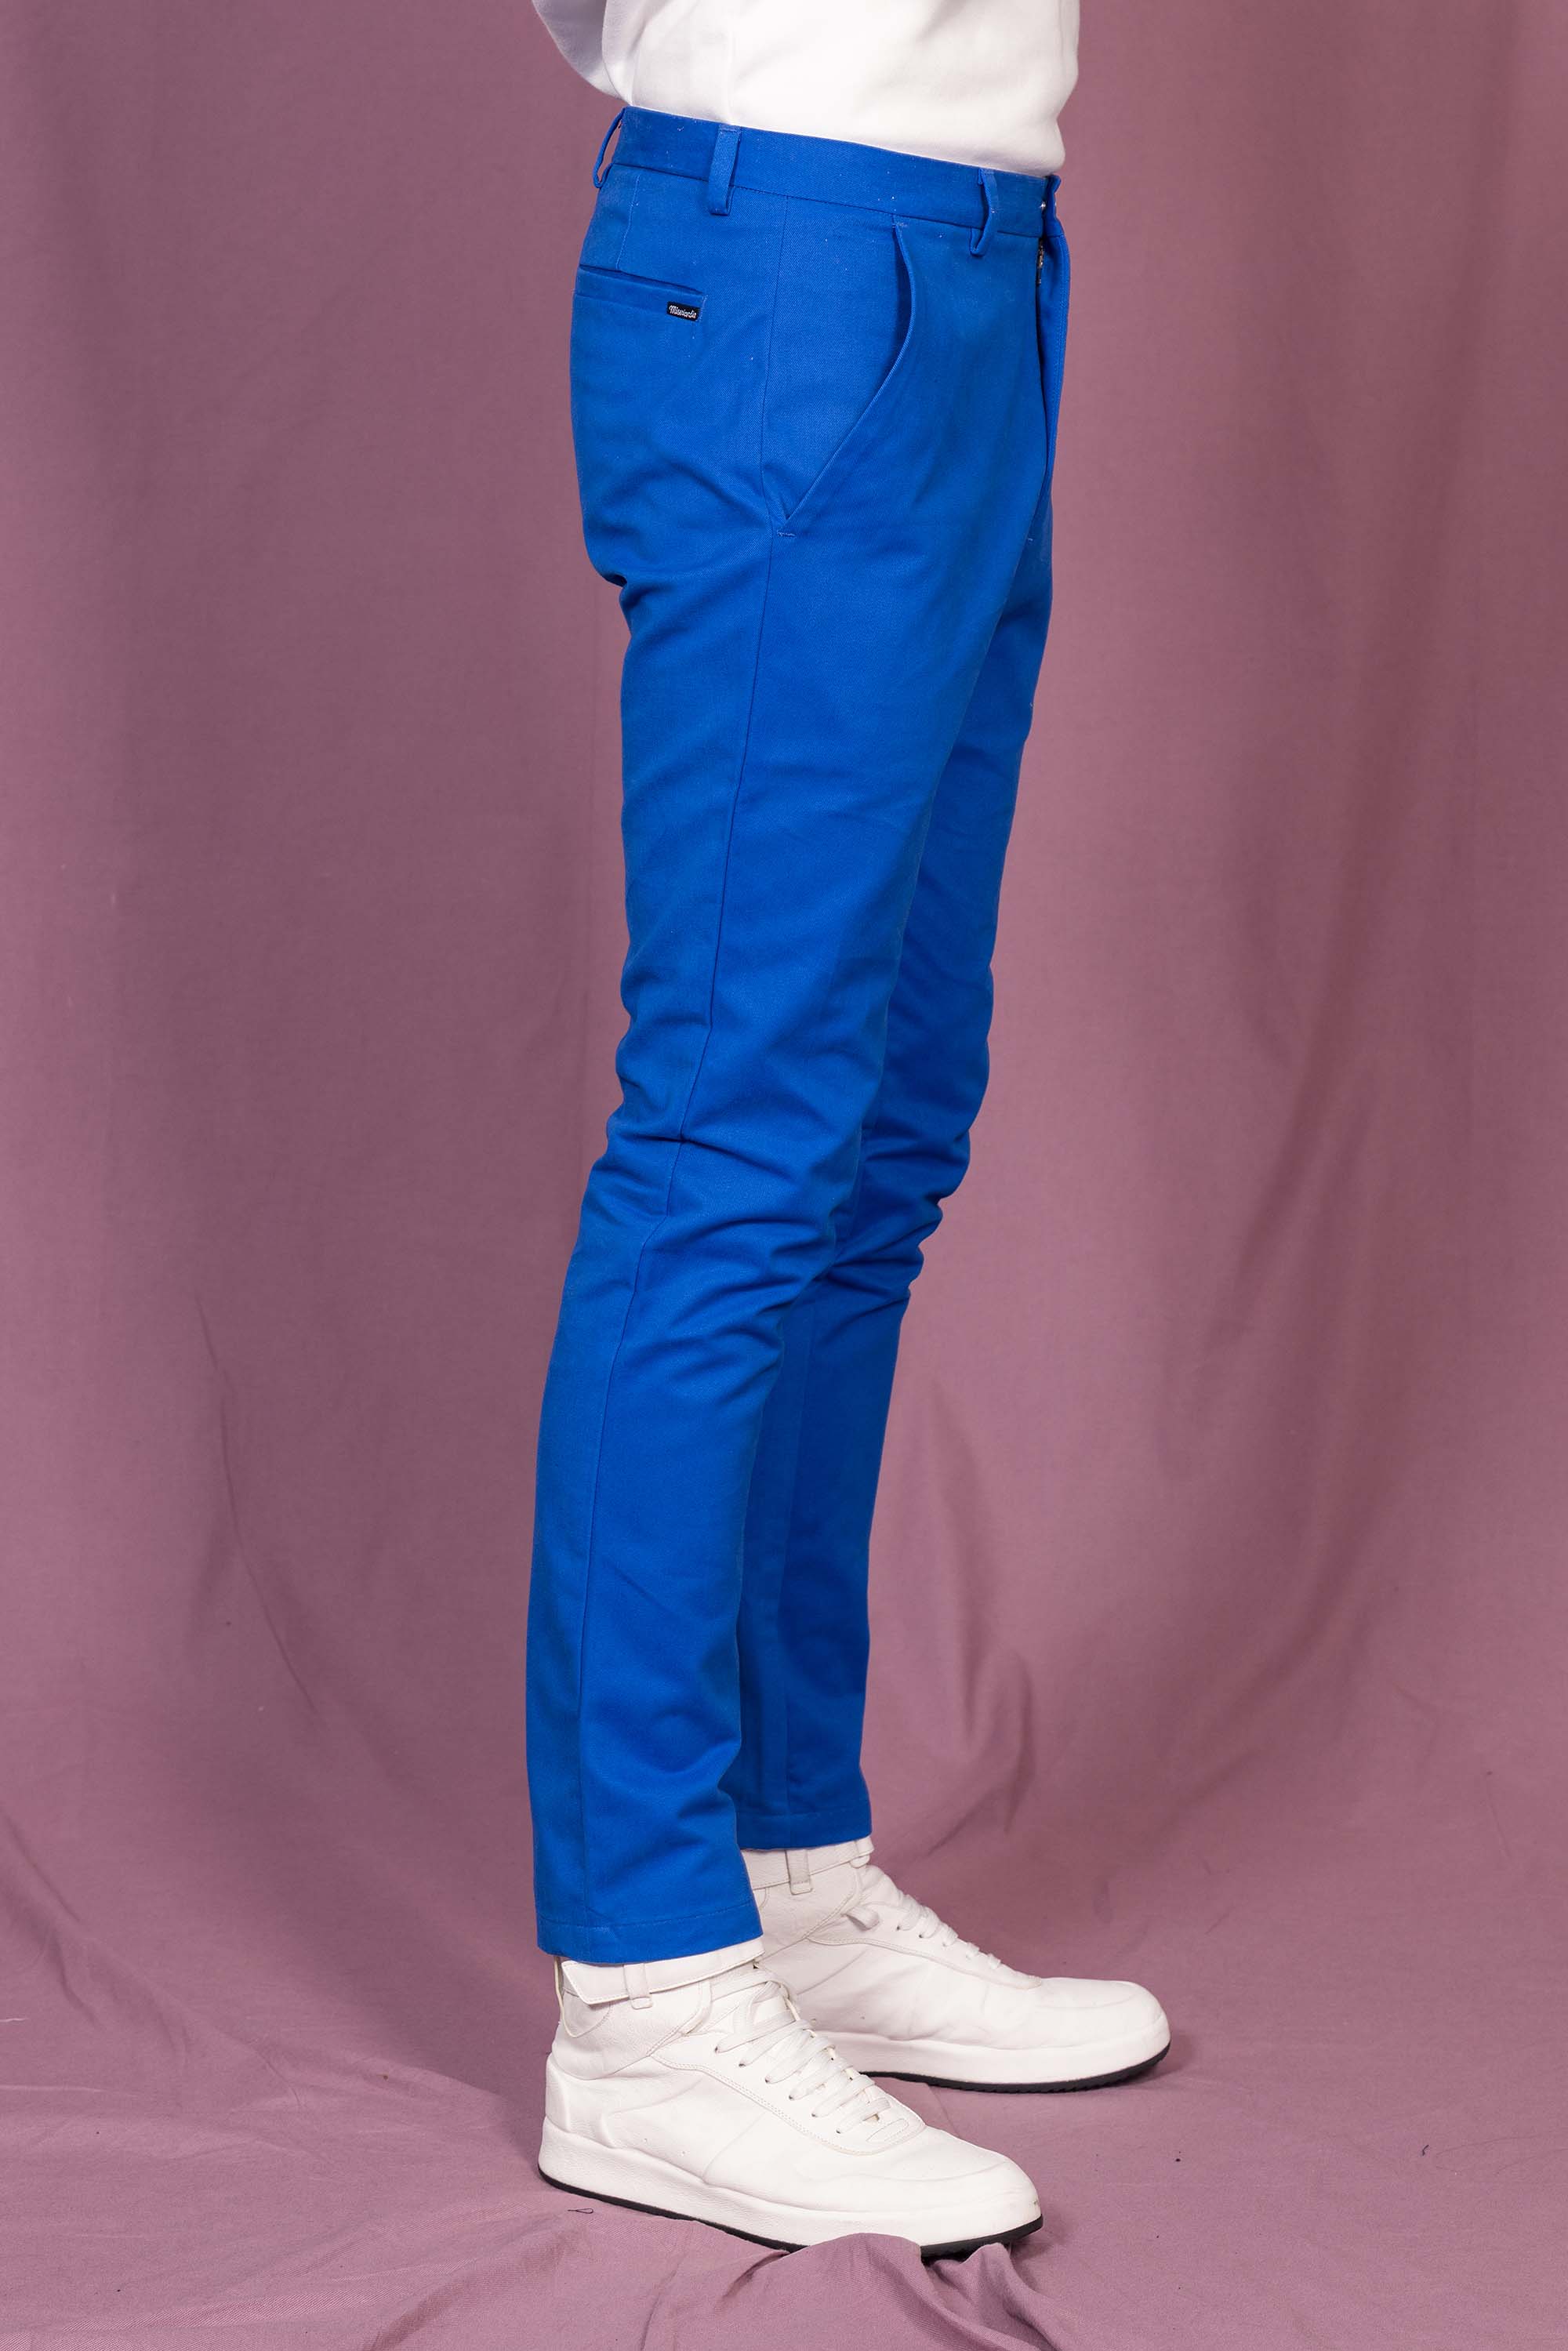 Pantalon homme cuir agneau stretch modèle Paul couleur bleu très